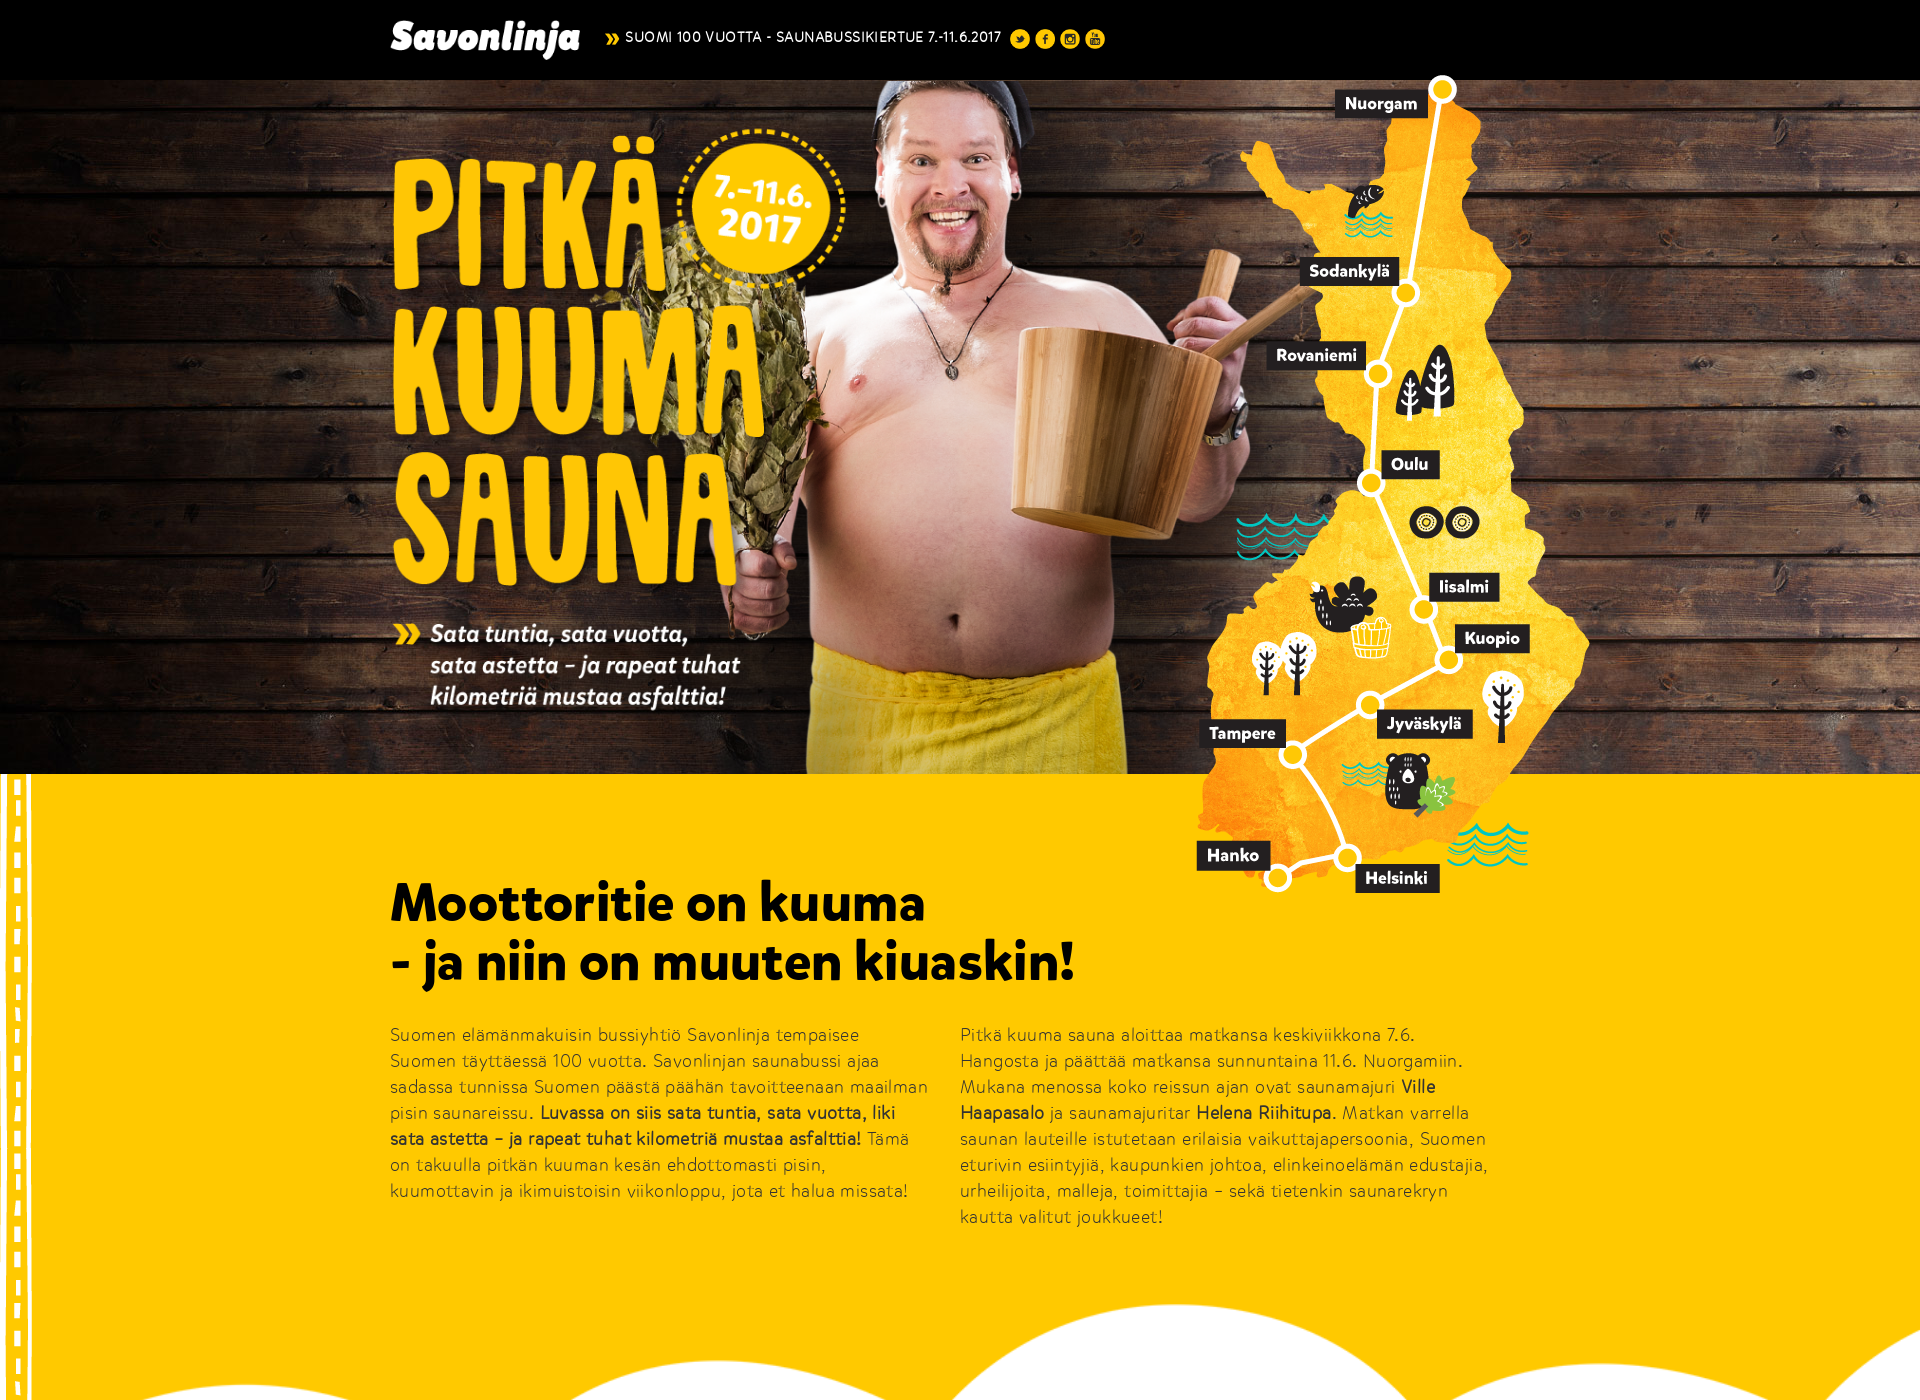 Näyttökuva pitkakuumasauna.fi